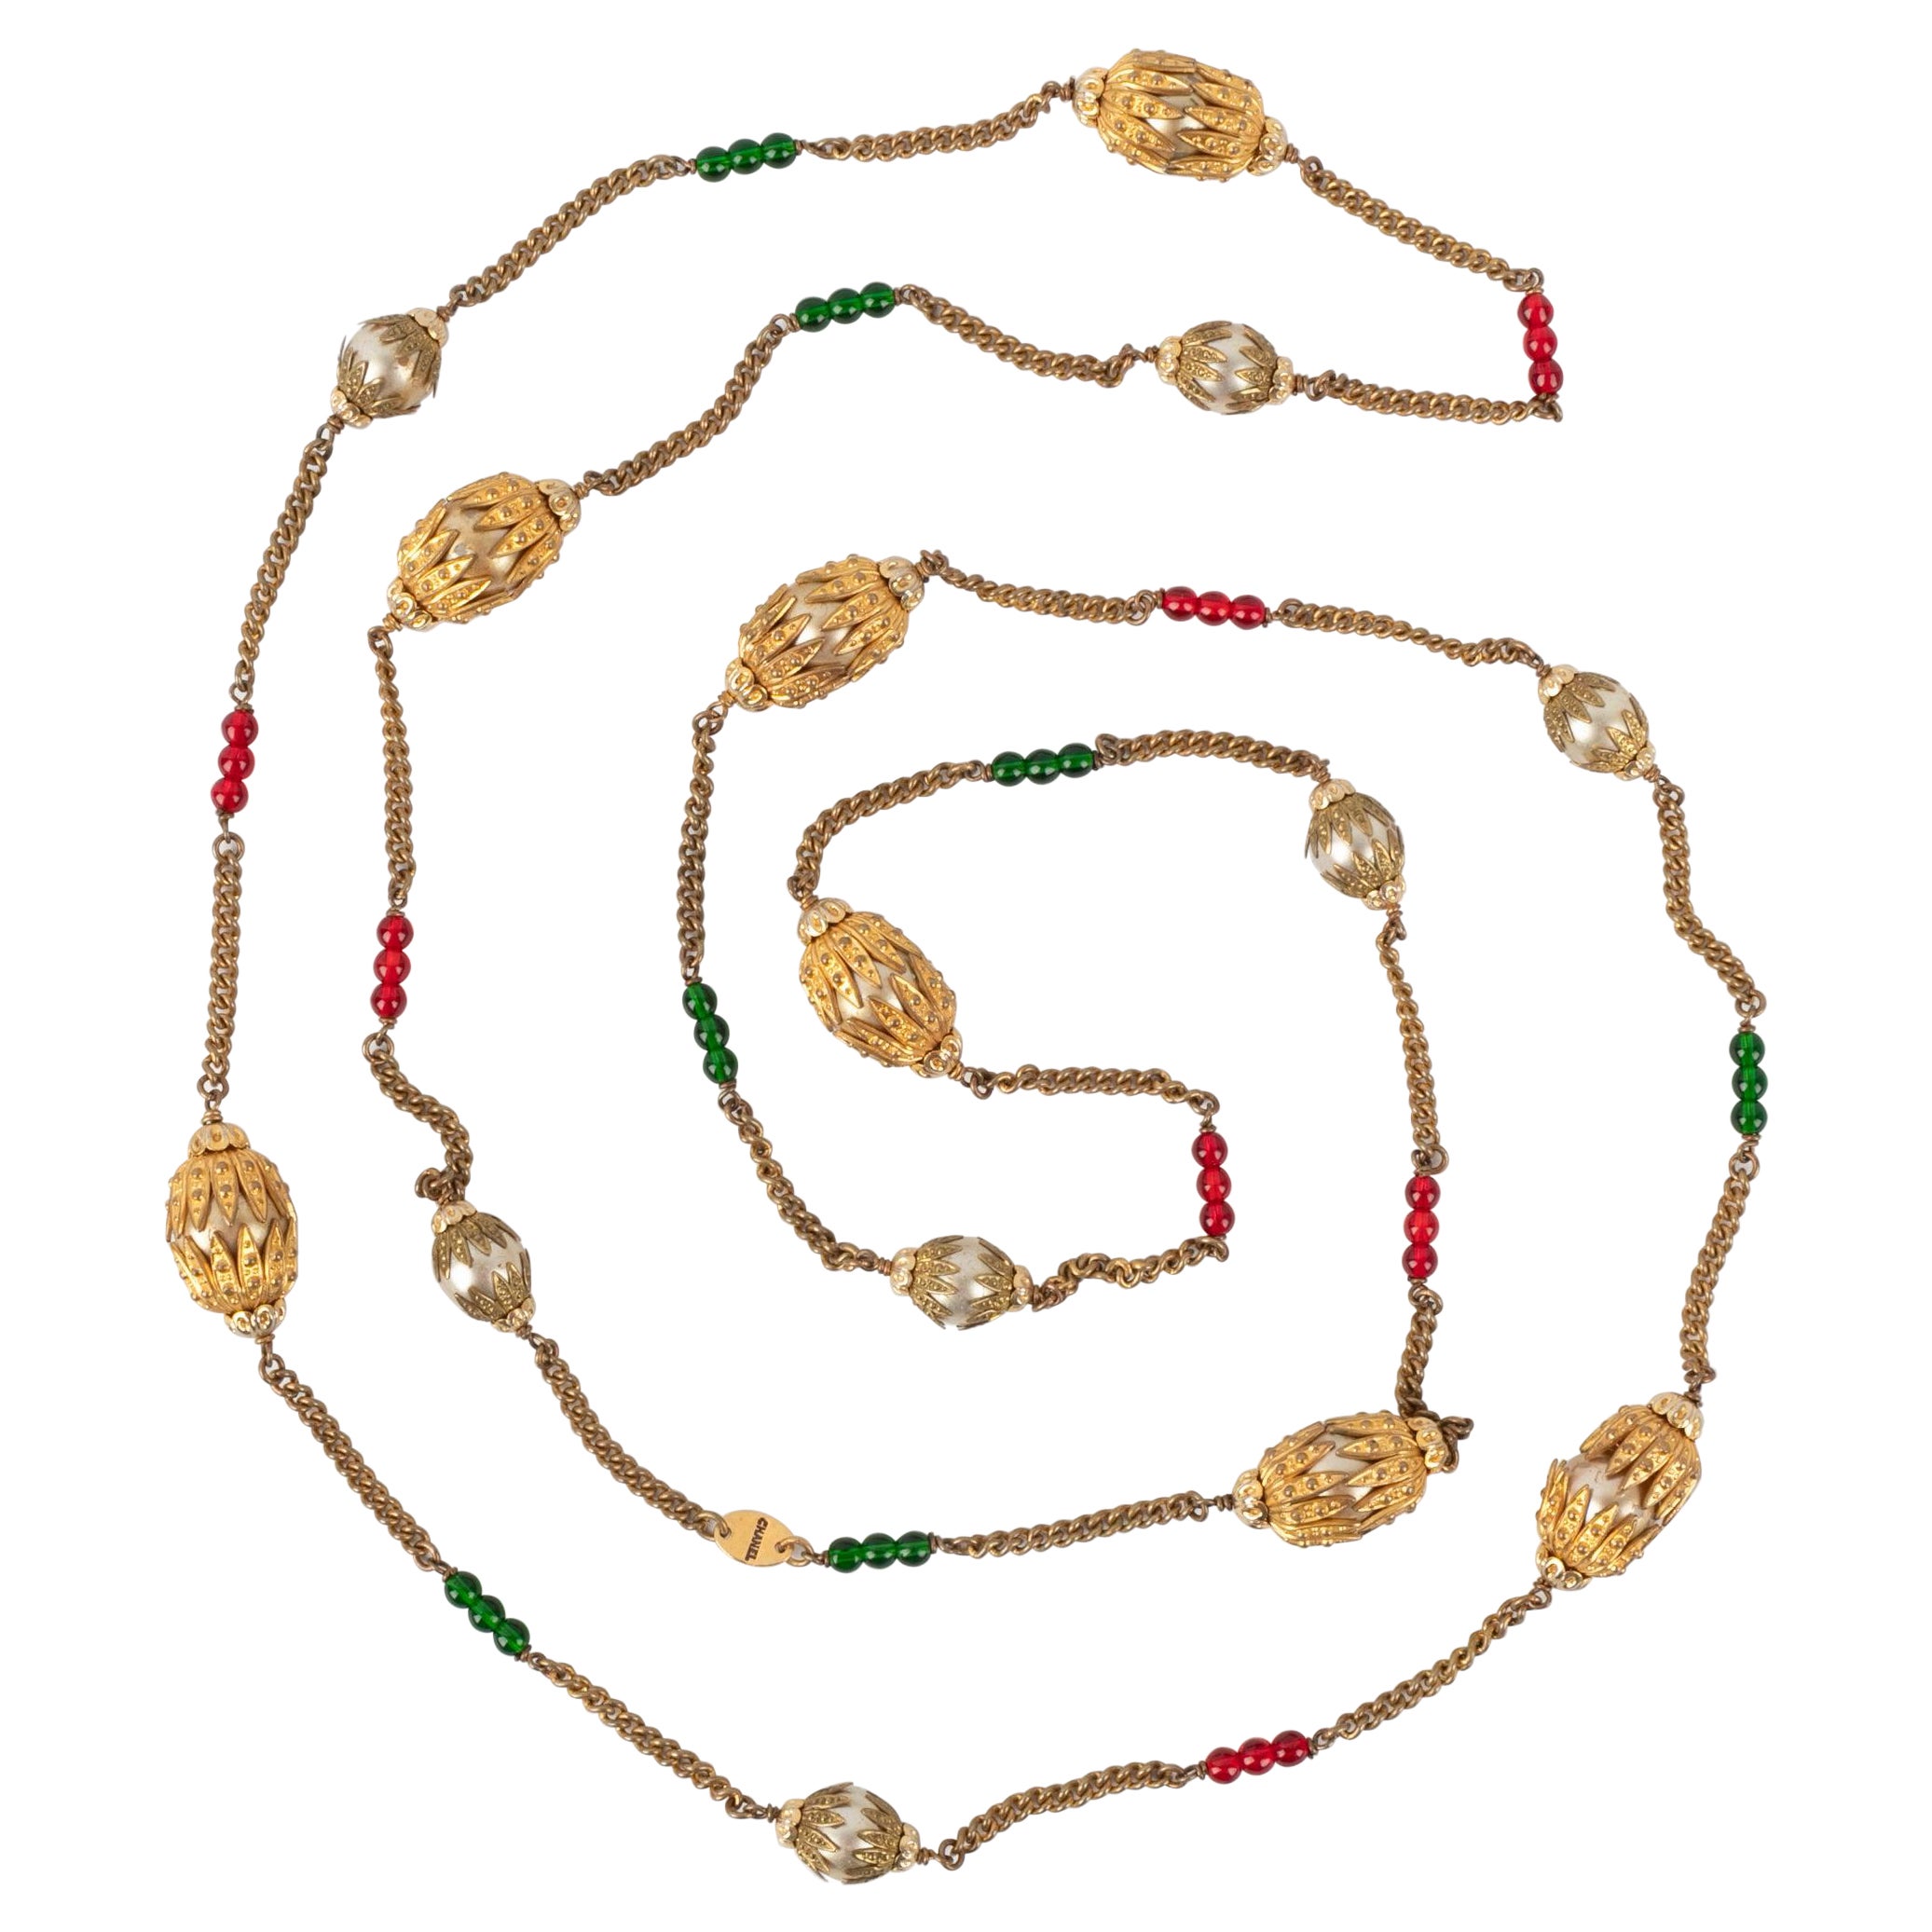 Chanel Halskette / Sautoir mit Glasperlen und Perlen im Kostüm Perlen